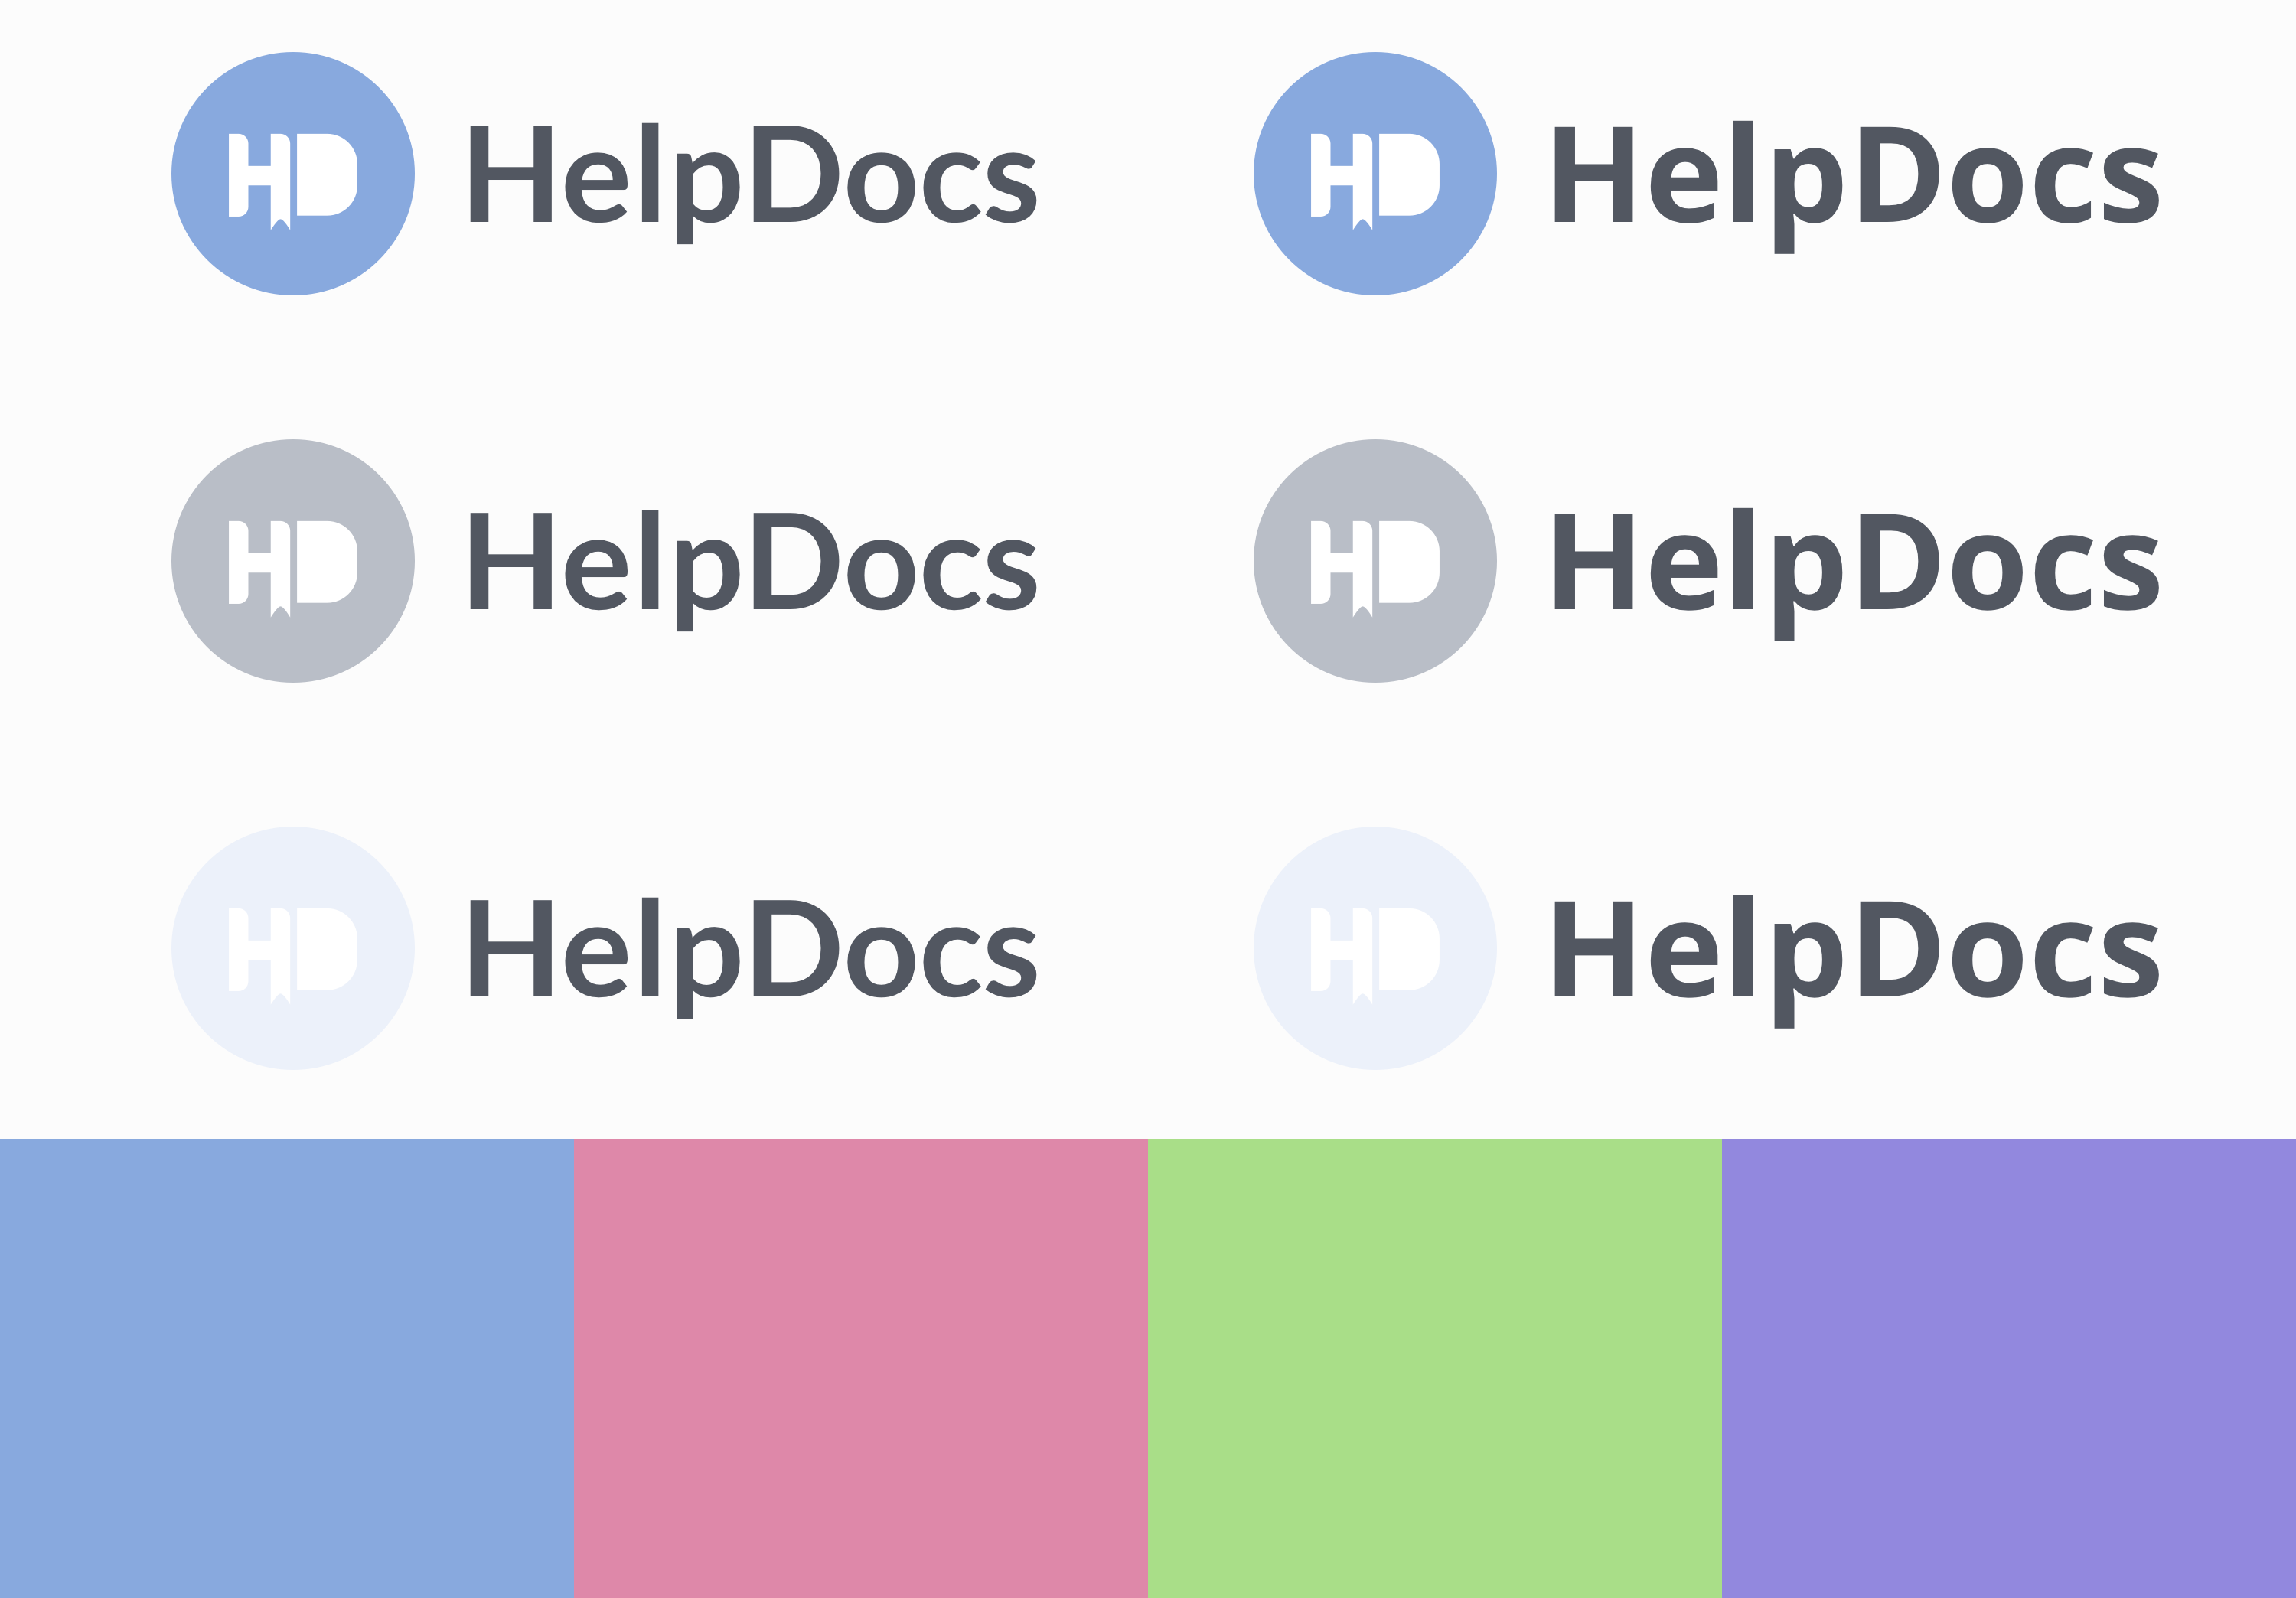 HelpDocs Colors and Logo